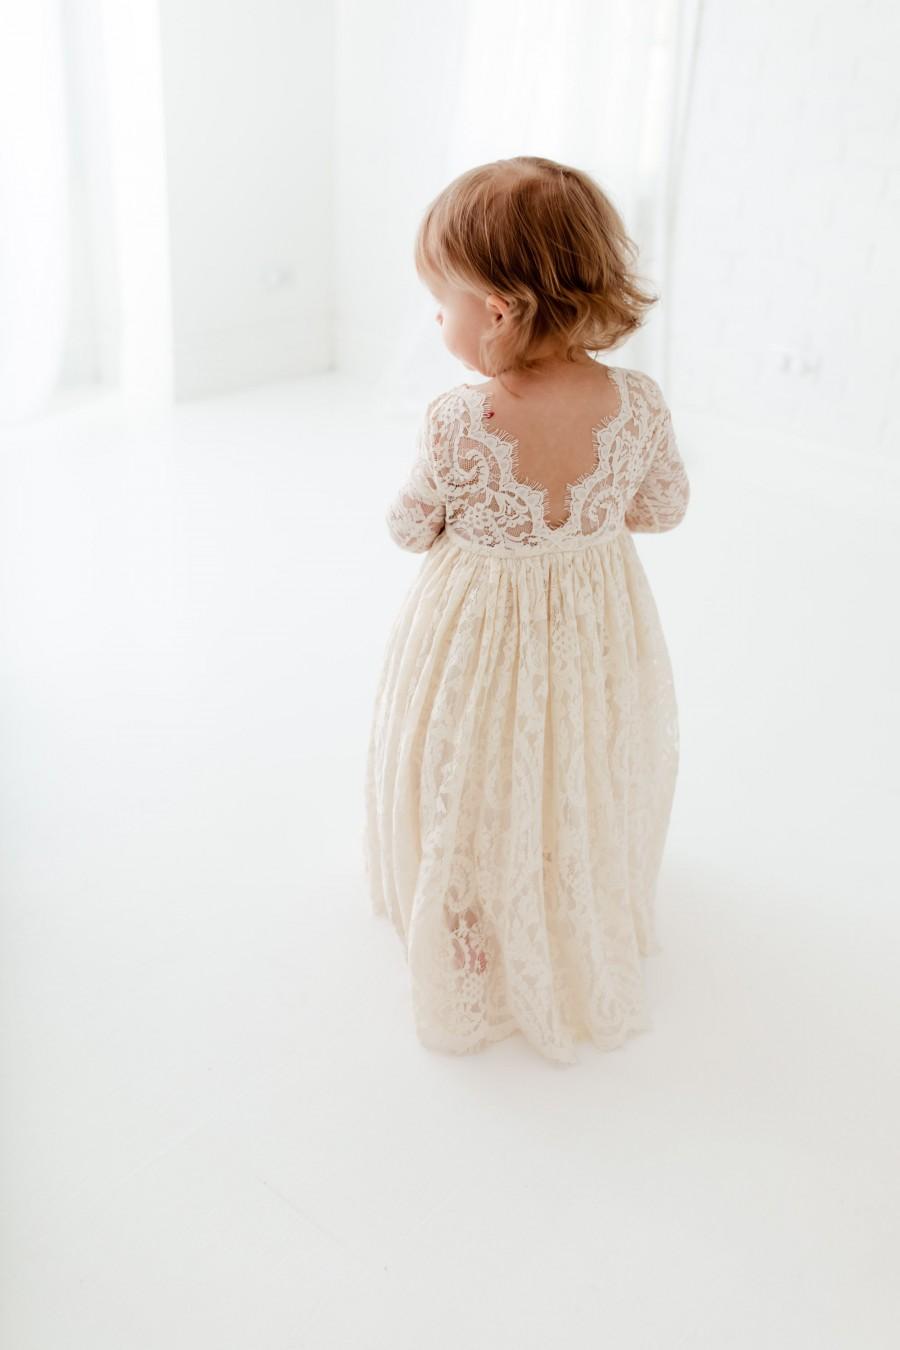 Wedding - Bohemian Ivory Flower Girl Dress, Rustic Tulle Wedding Dress, Will You Be My Flower Girl Proposal, Boho Dresses